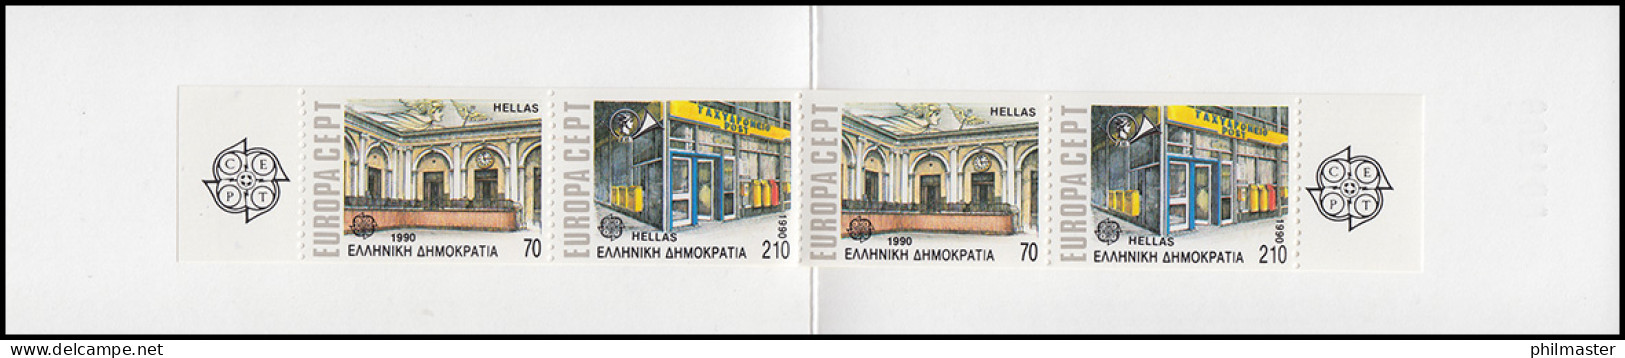 Griechenland Markenheftchen 13 Europa 1990, ** Postfrisch - Booklets